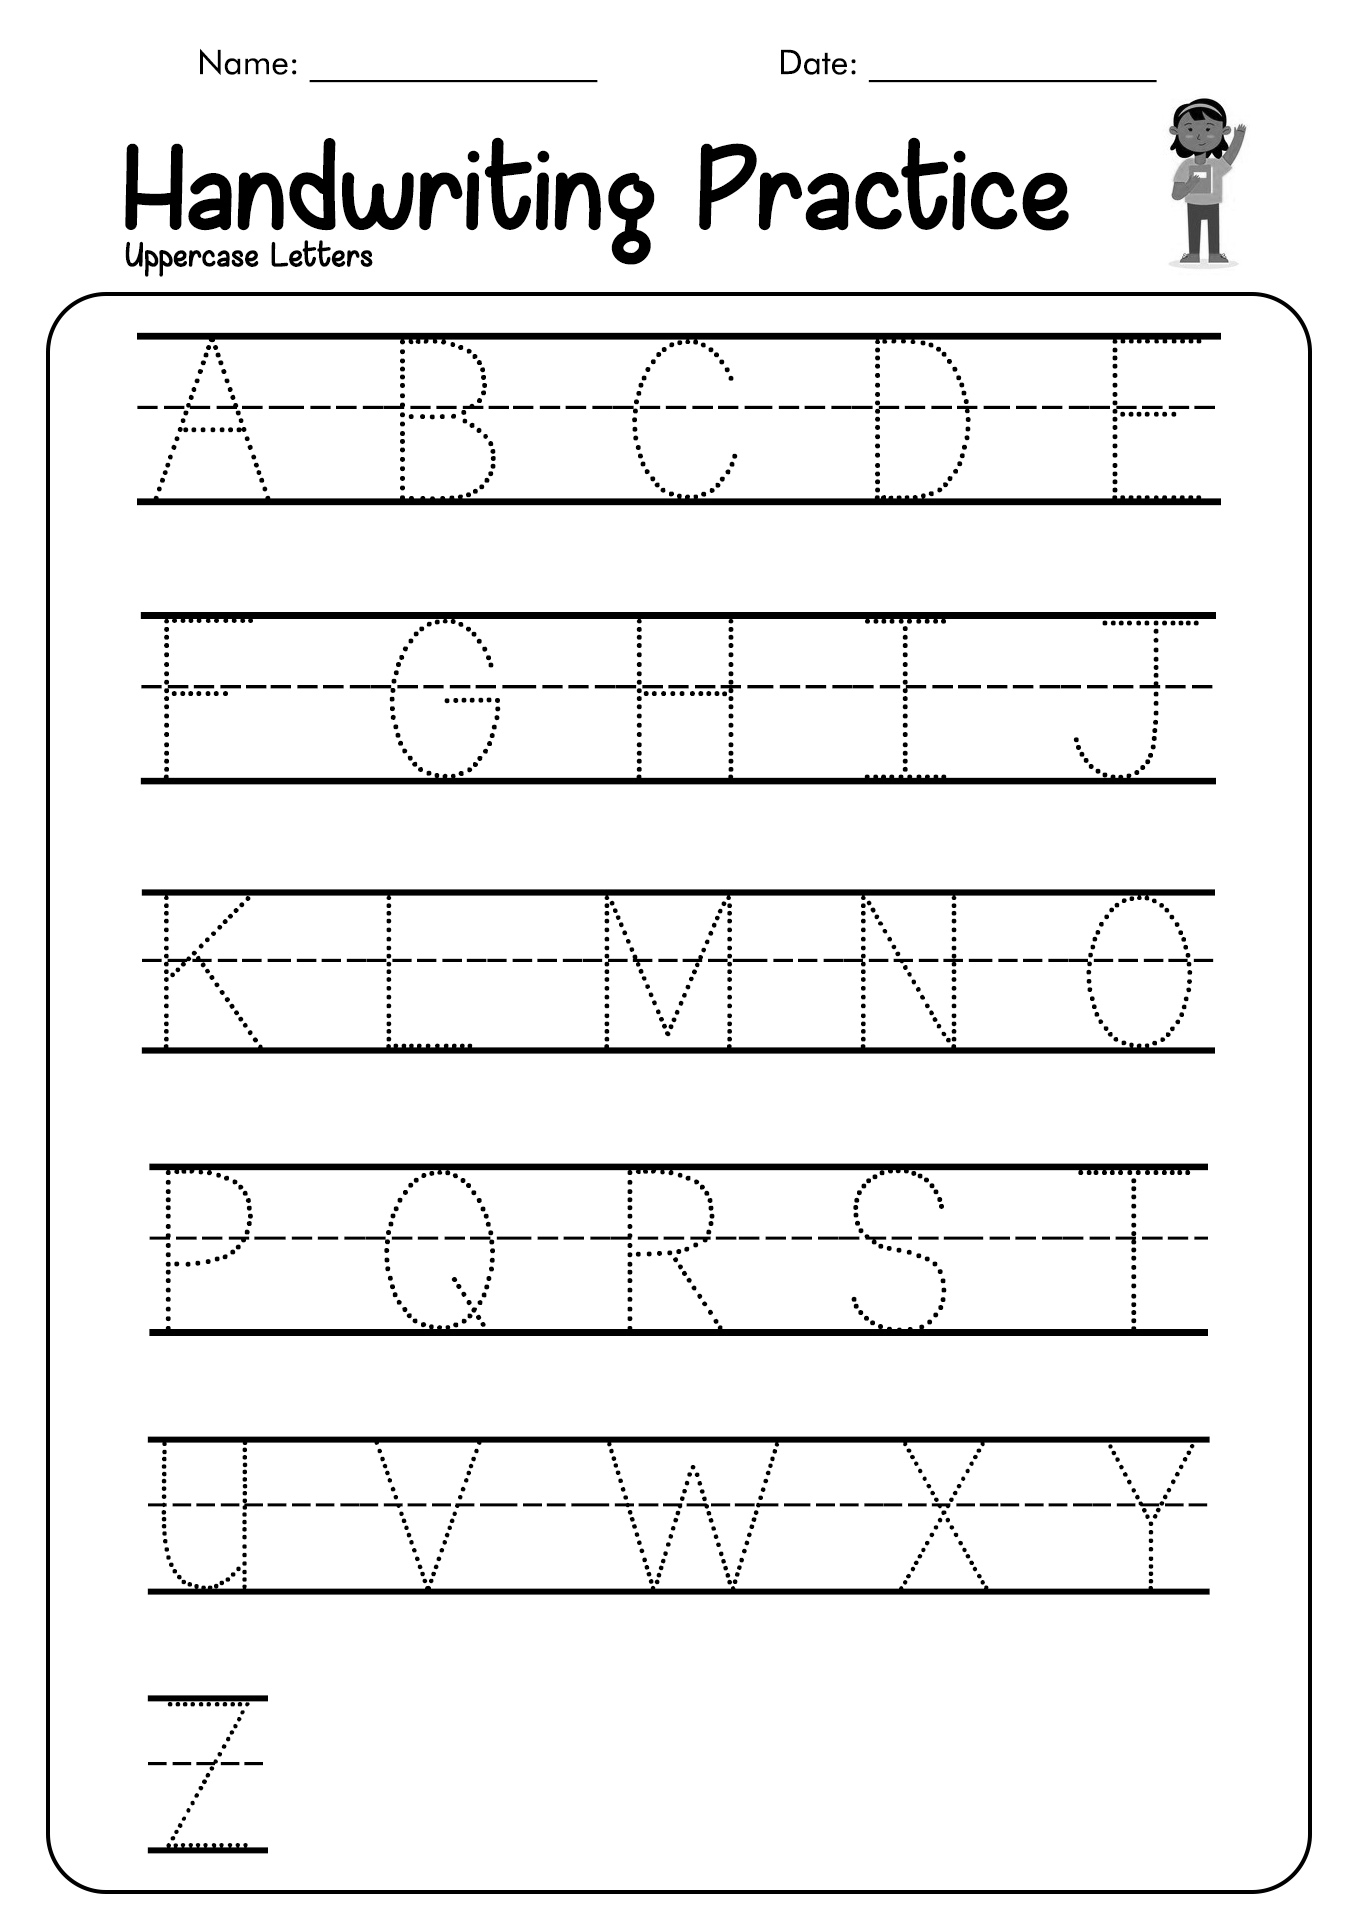 Kindergarten Letter Practice Worksheets